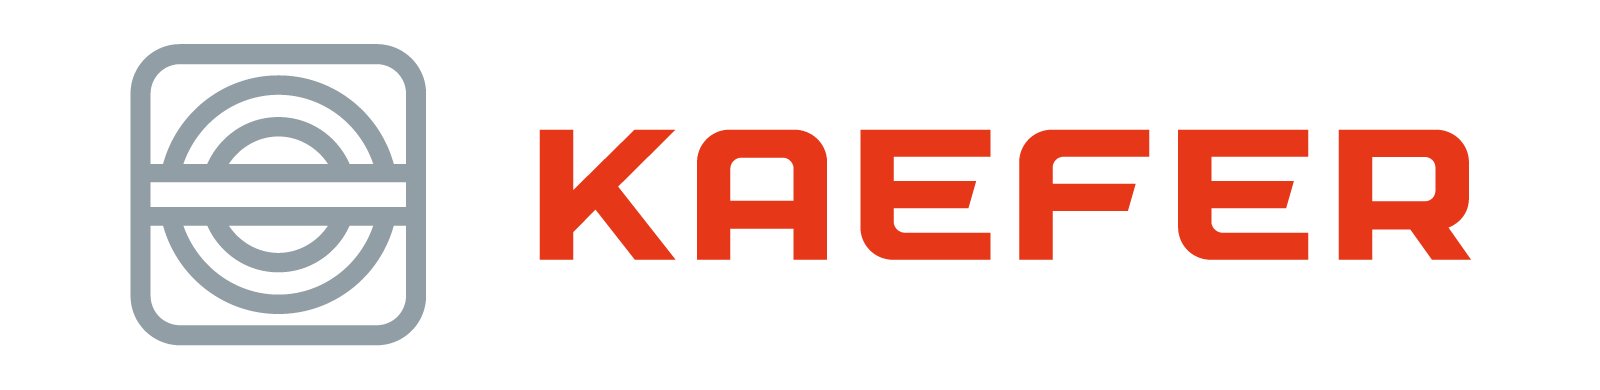 KAEFER Logo